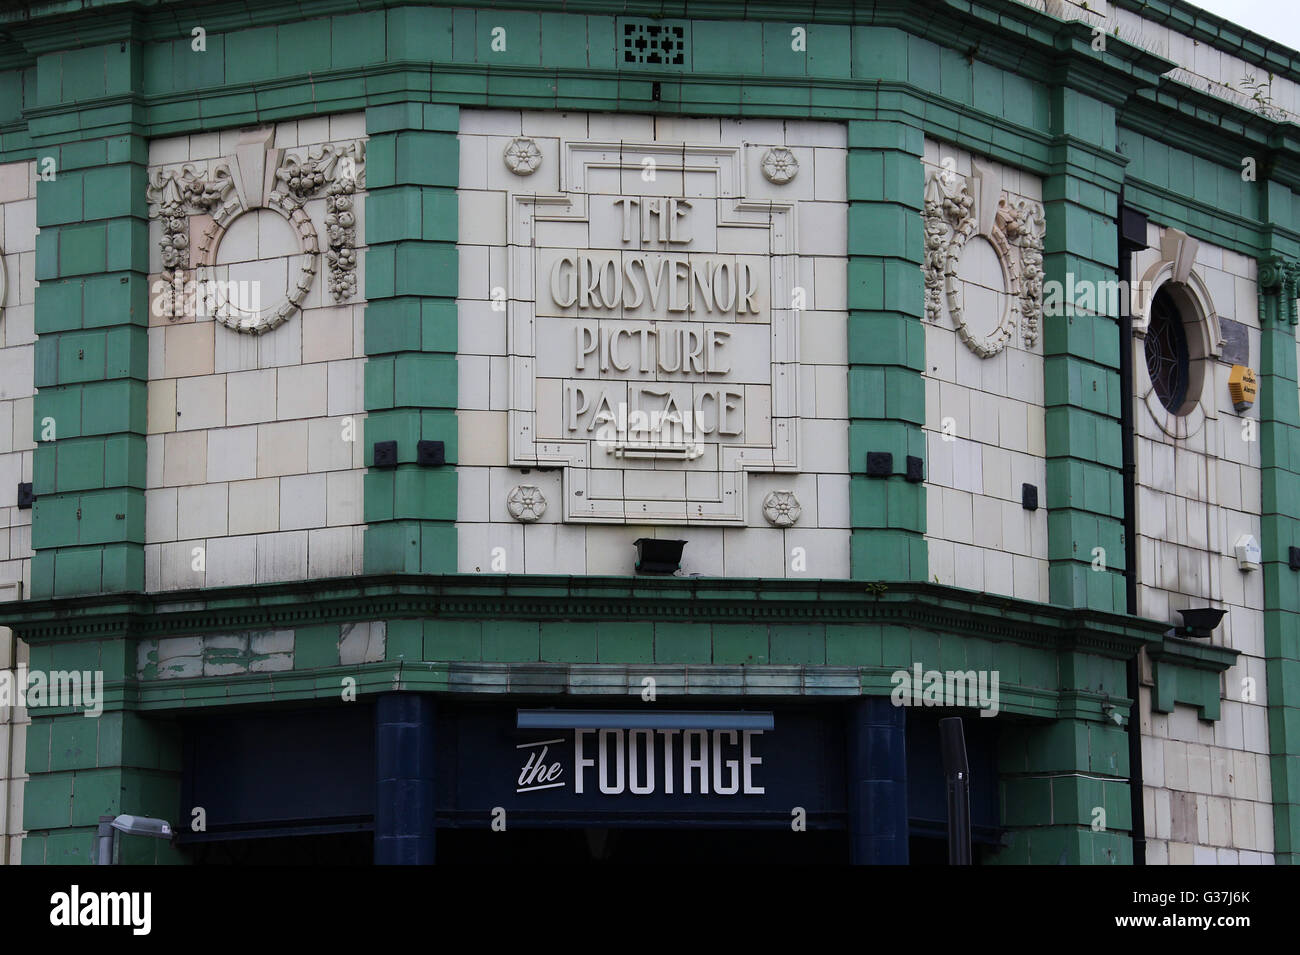 Die Grosvenor Bild Palastgebäude und Eintritt in das Filmmaterial ist ein Stonegate Pub in Manchester Stockfoto